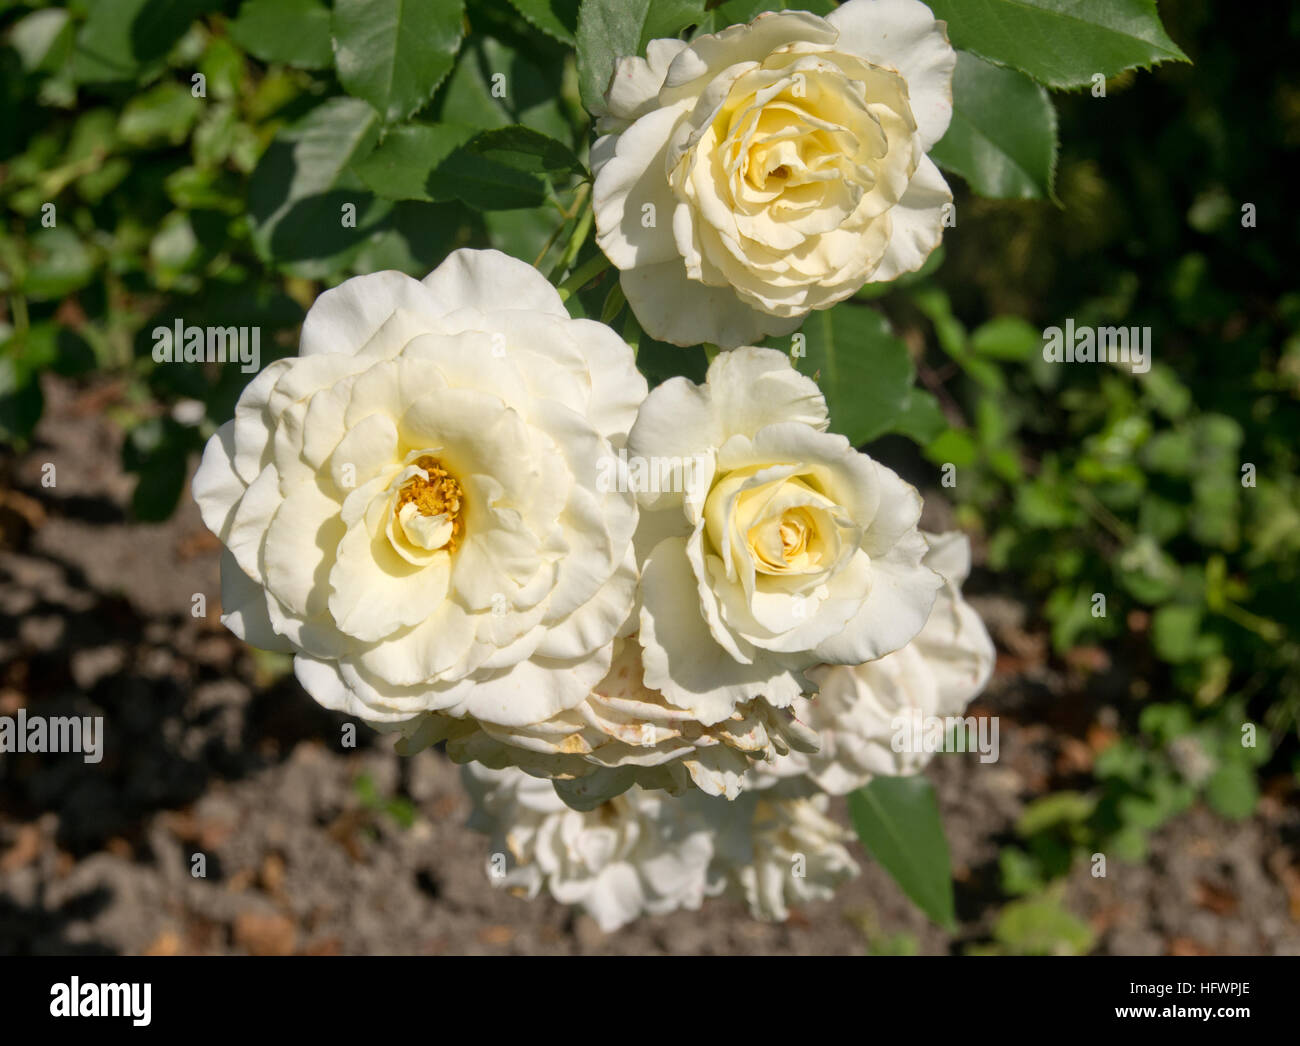 Centenaire de lourdes blanc hi-res stock photography and images - Alamy